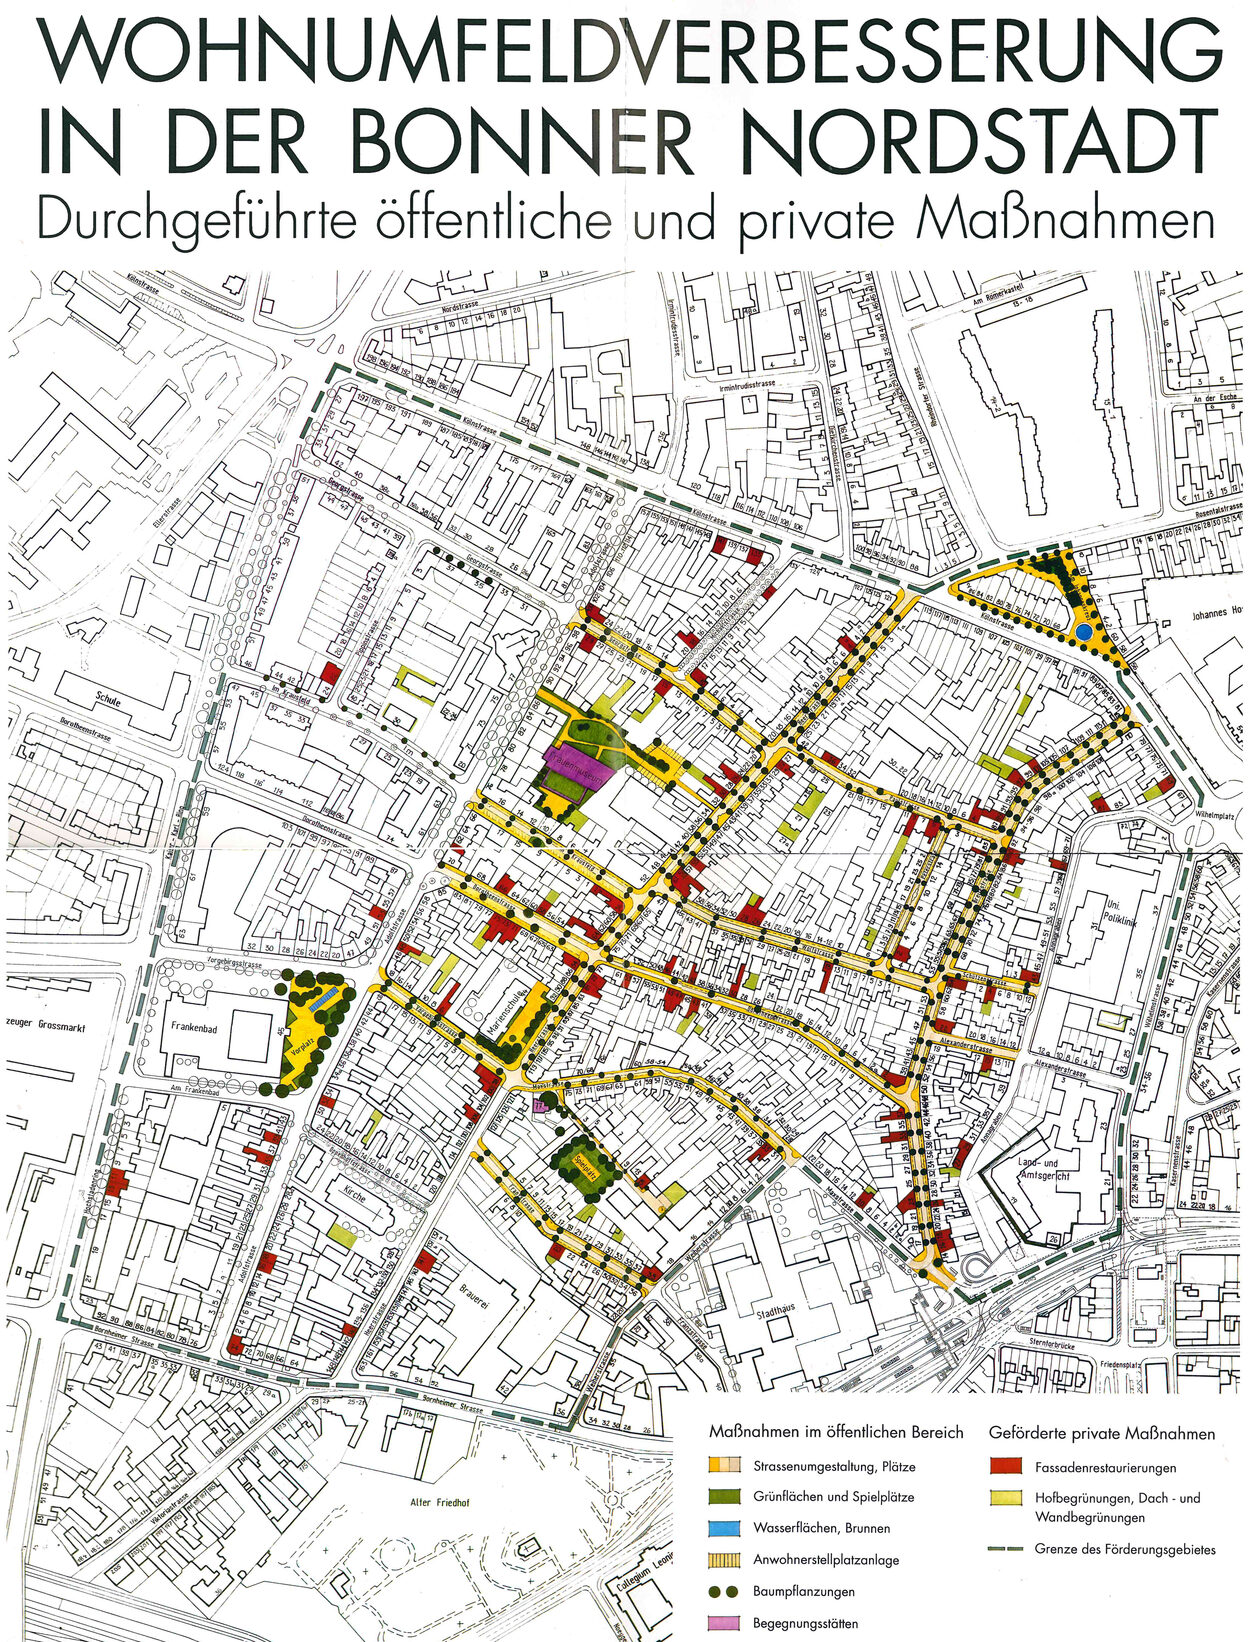 Wohnumfeldverbesserung in der Bonner Nordstadt - Übersicht über die Maßnahmen